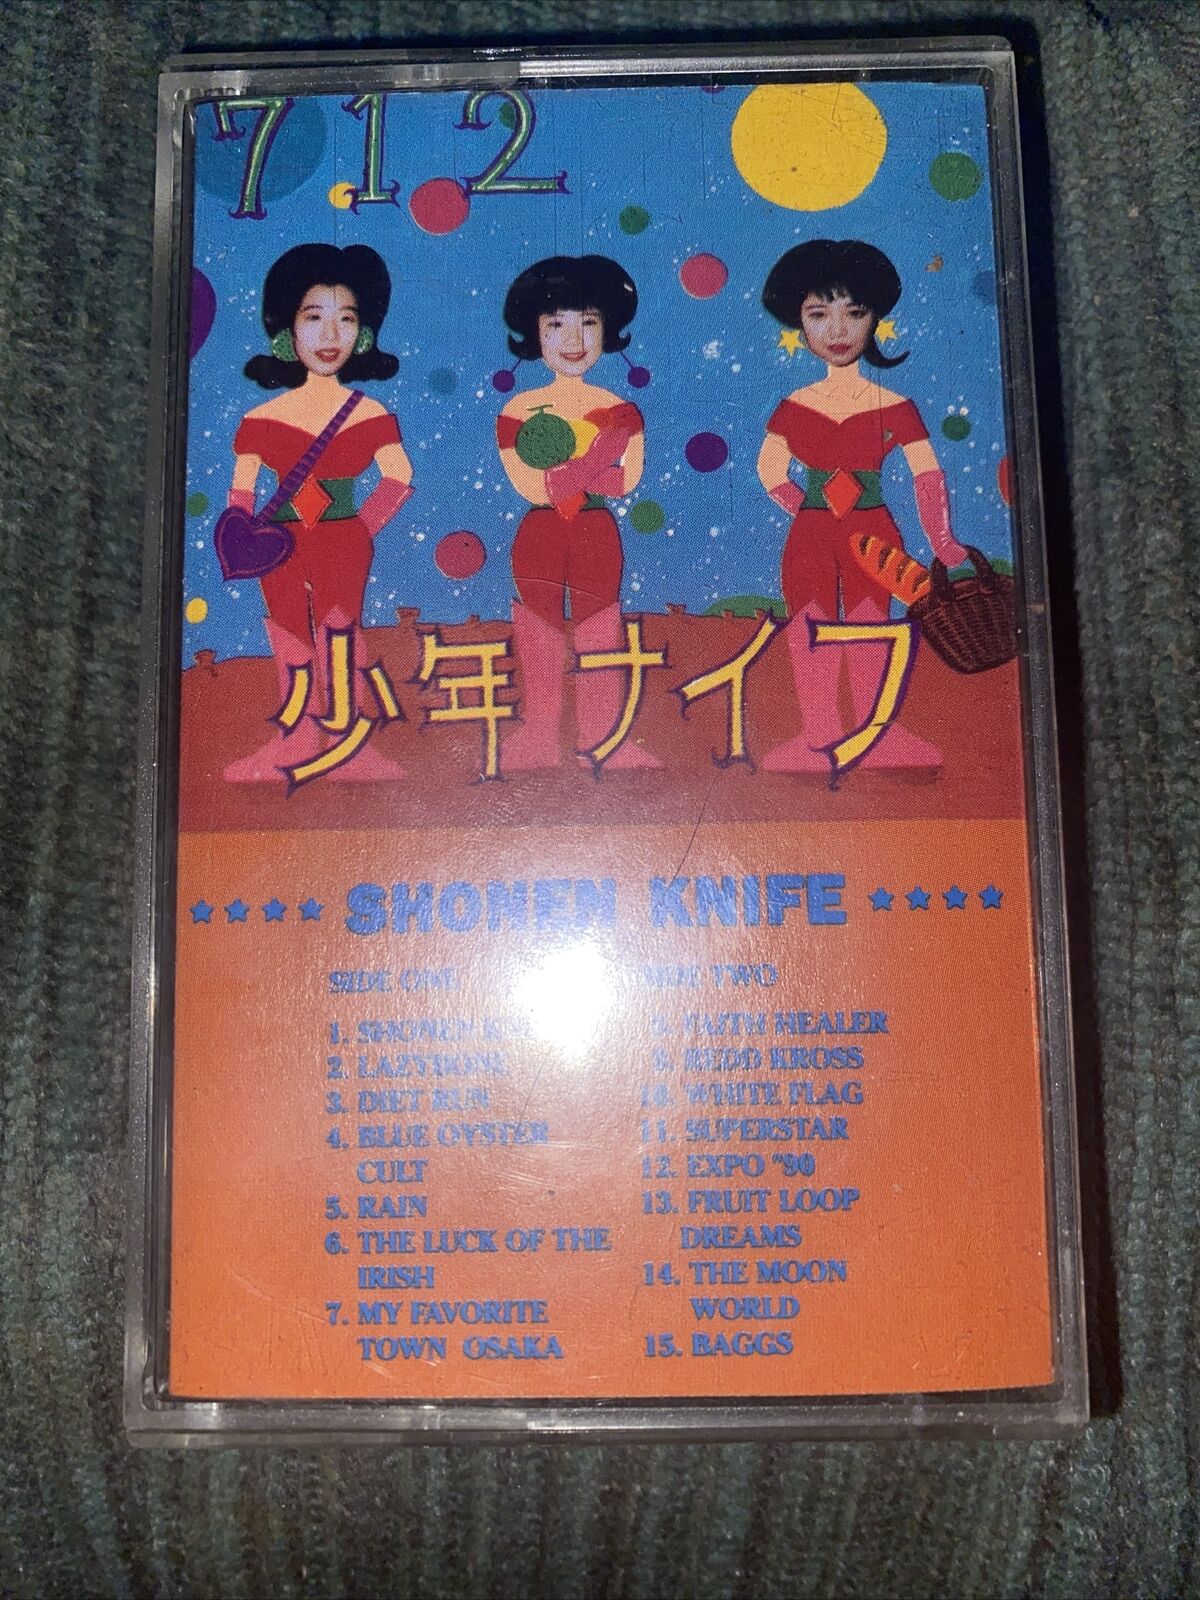 Shonen Knife Cassette 712